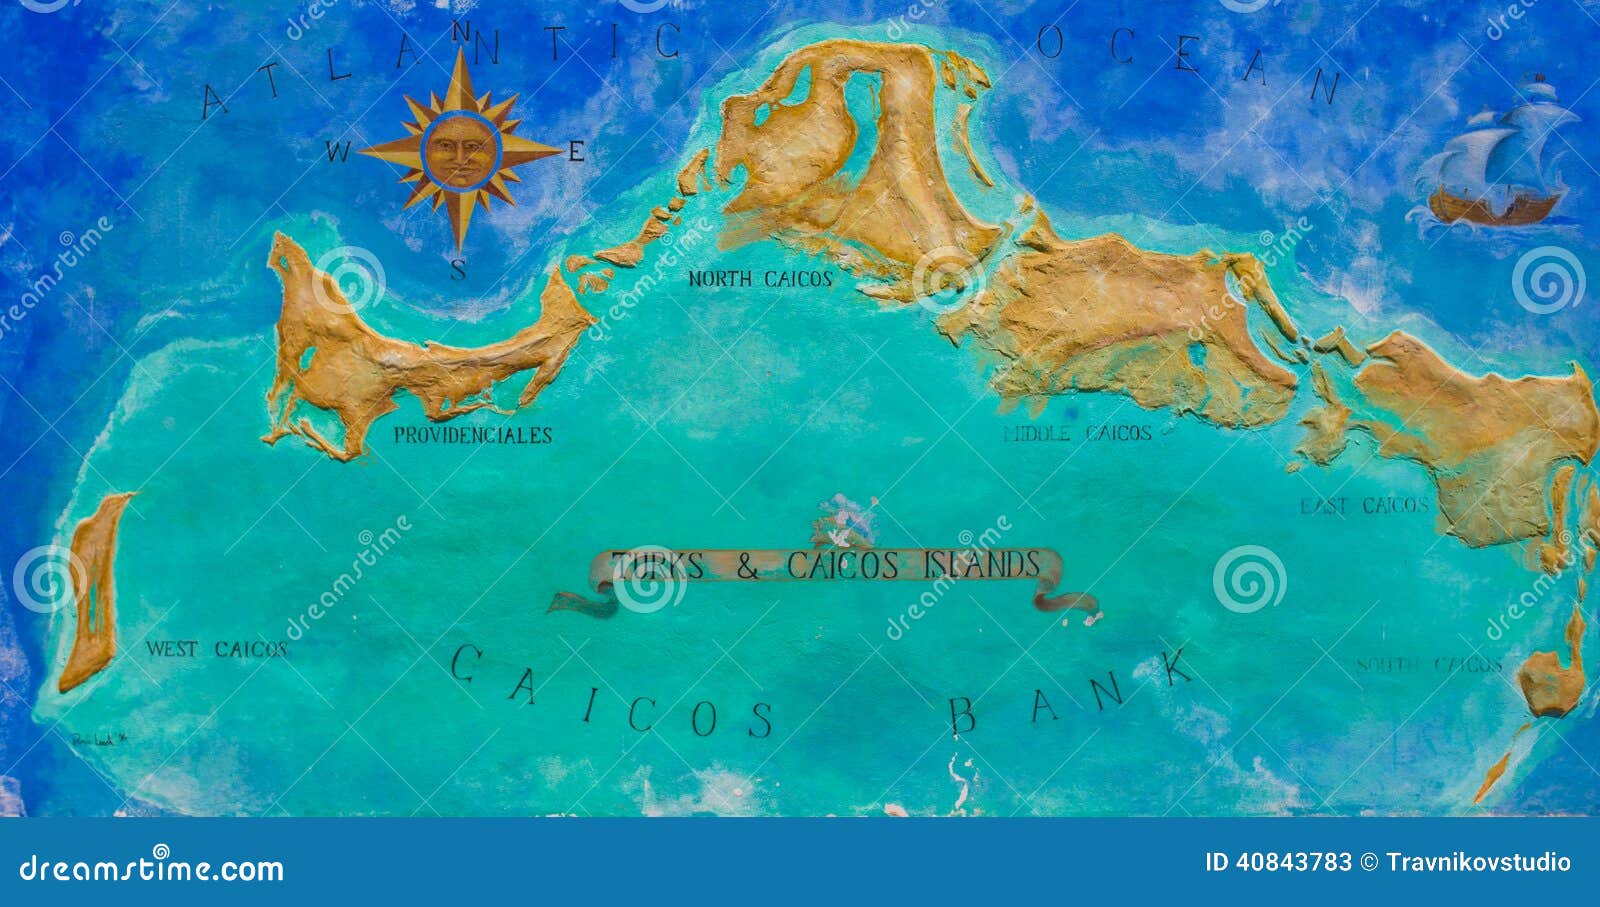 islas turcos y caicos mapa caribe